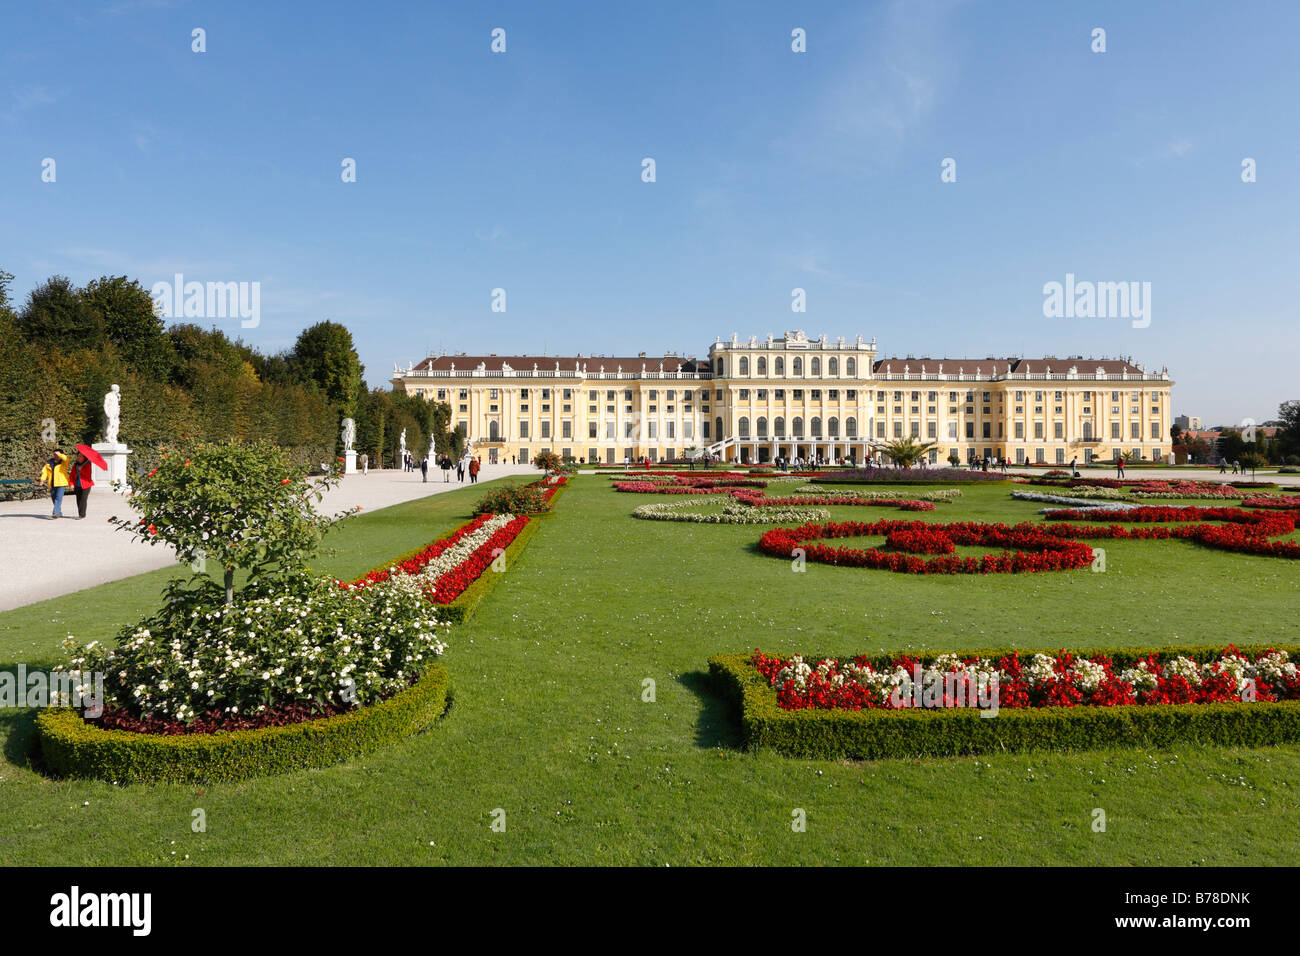 Schoenbrunn Palace, Schoenbrunn Palace Park, Vienna, Austria, Europe Stock Photo